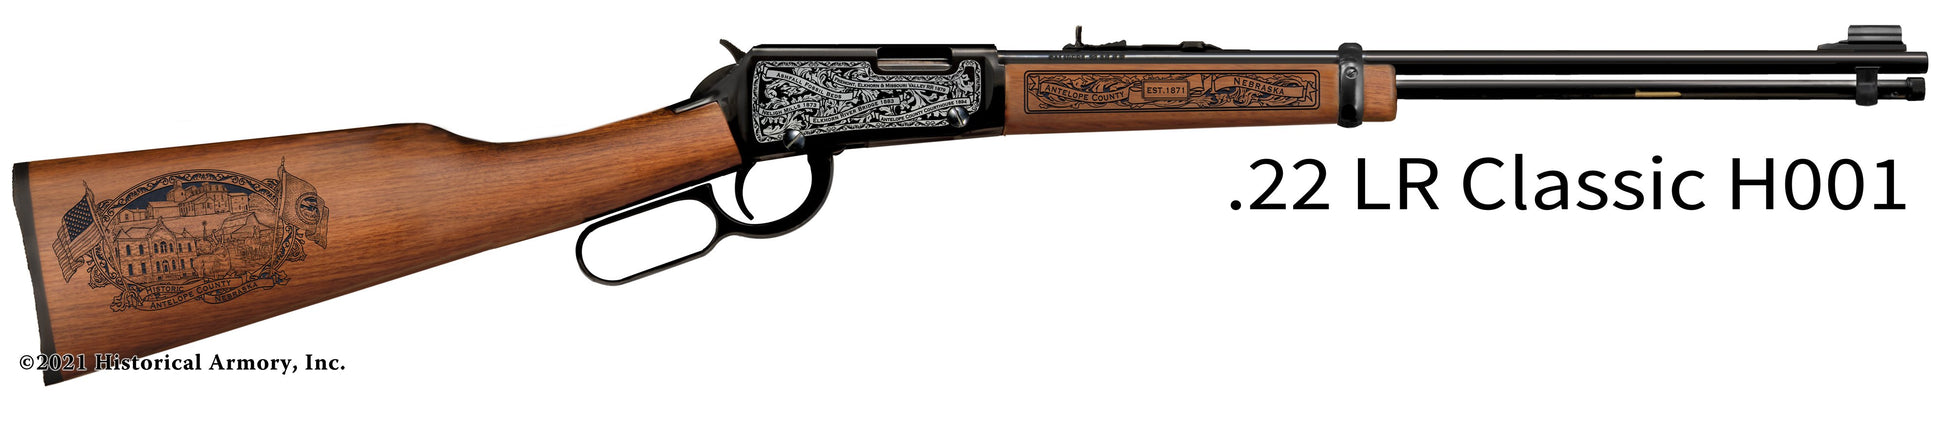 Antelope County Nebraska Engraved Henry H001 Rifle